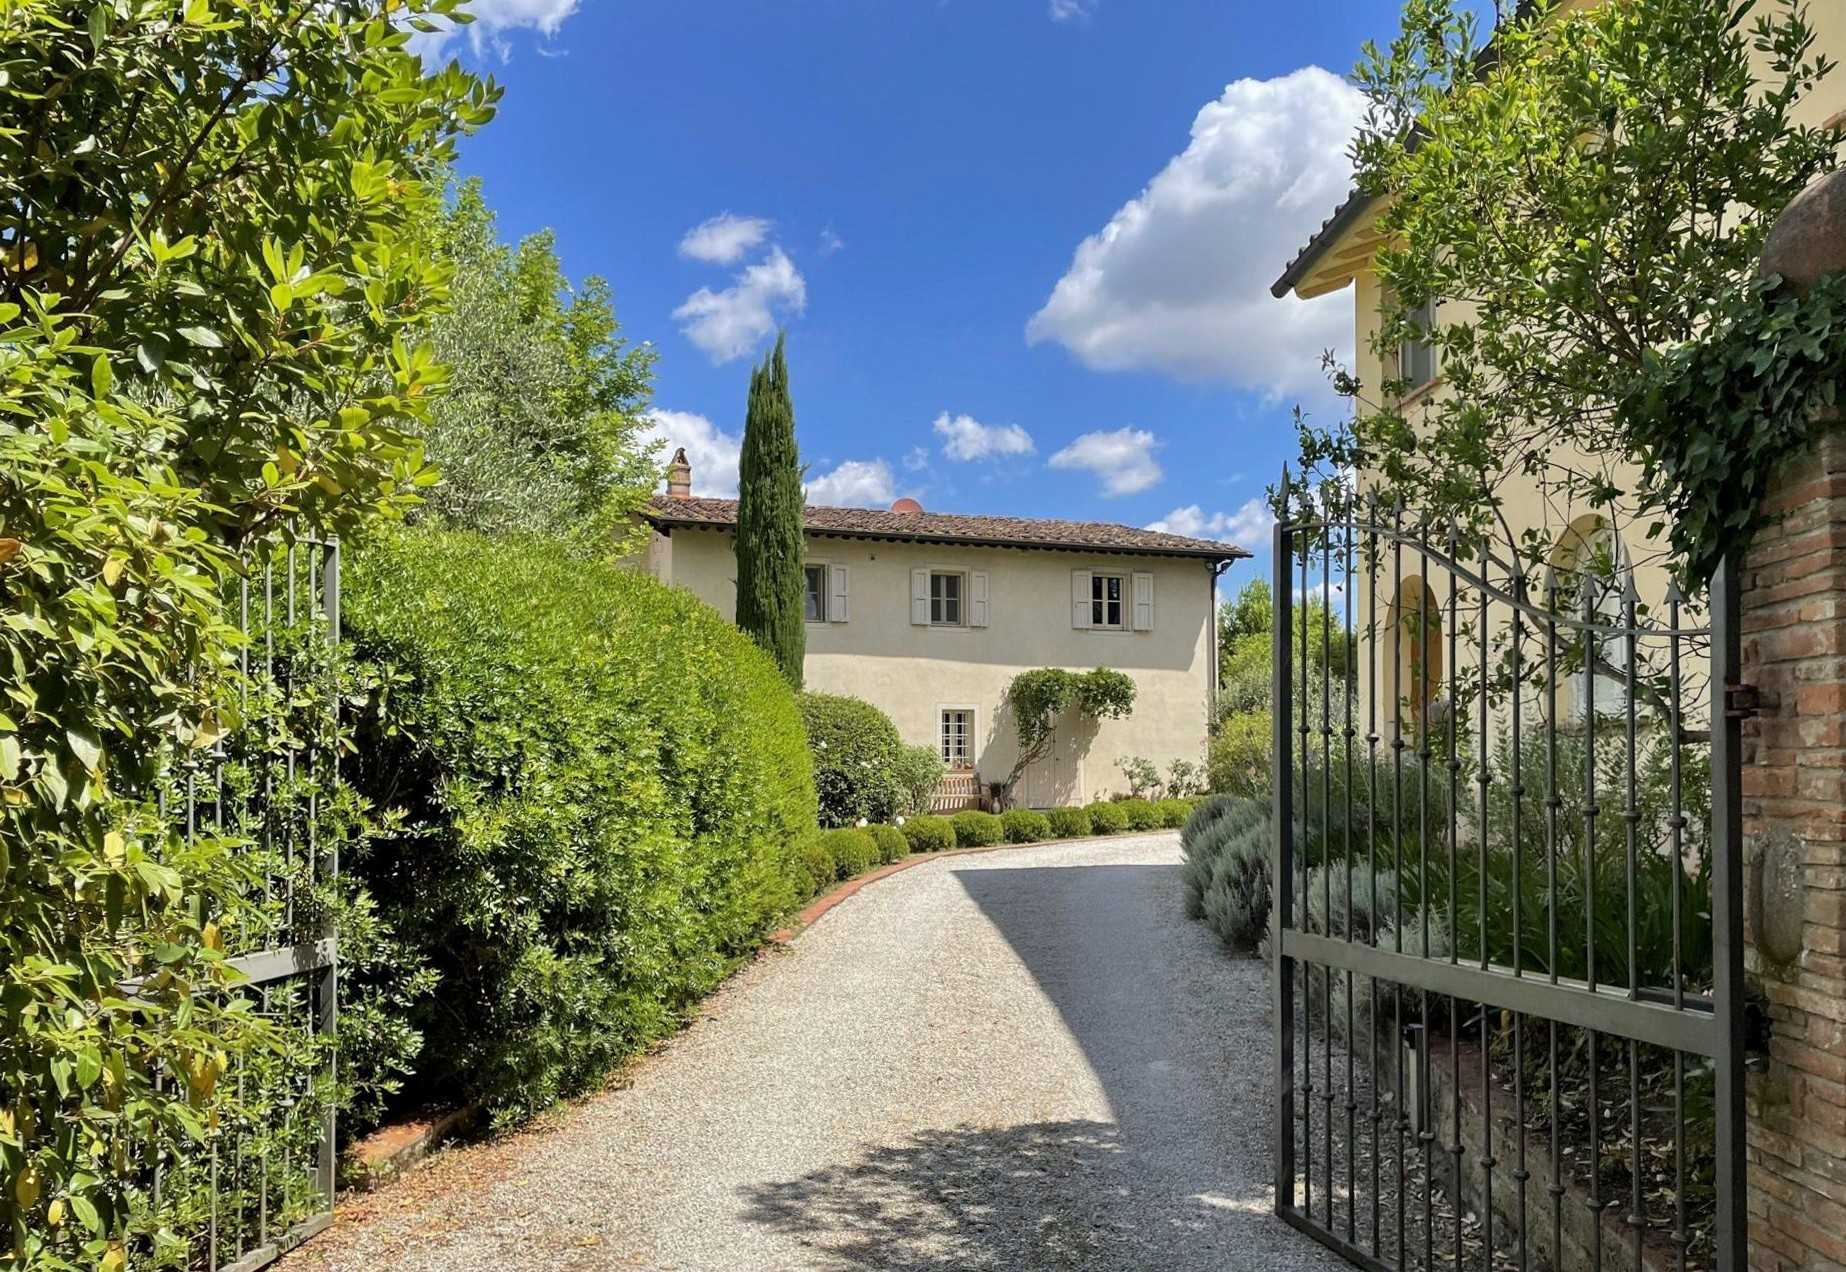 Images Villa met 7 hectare grond tussen Pisa en Florence